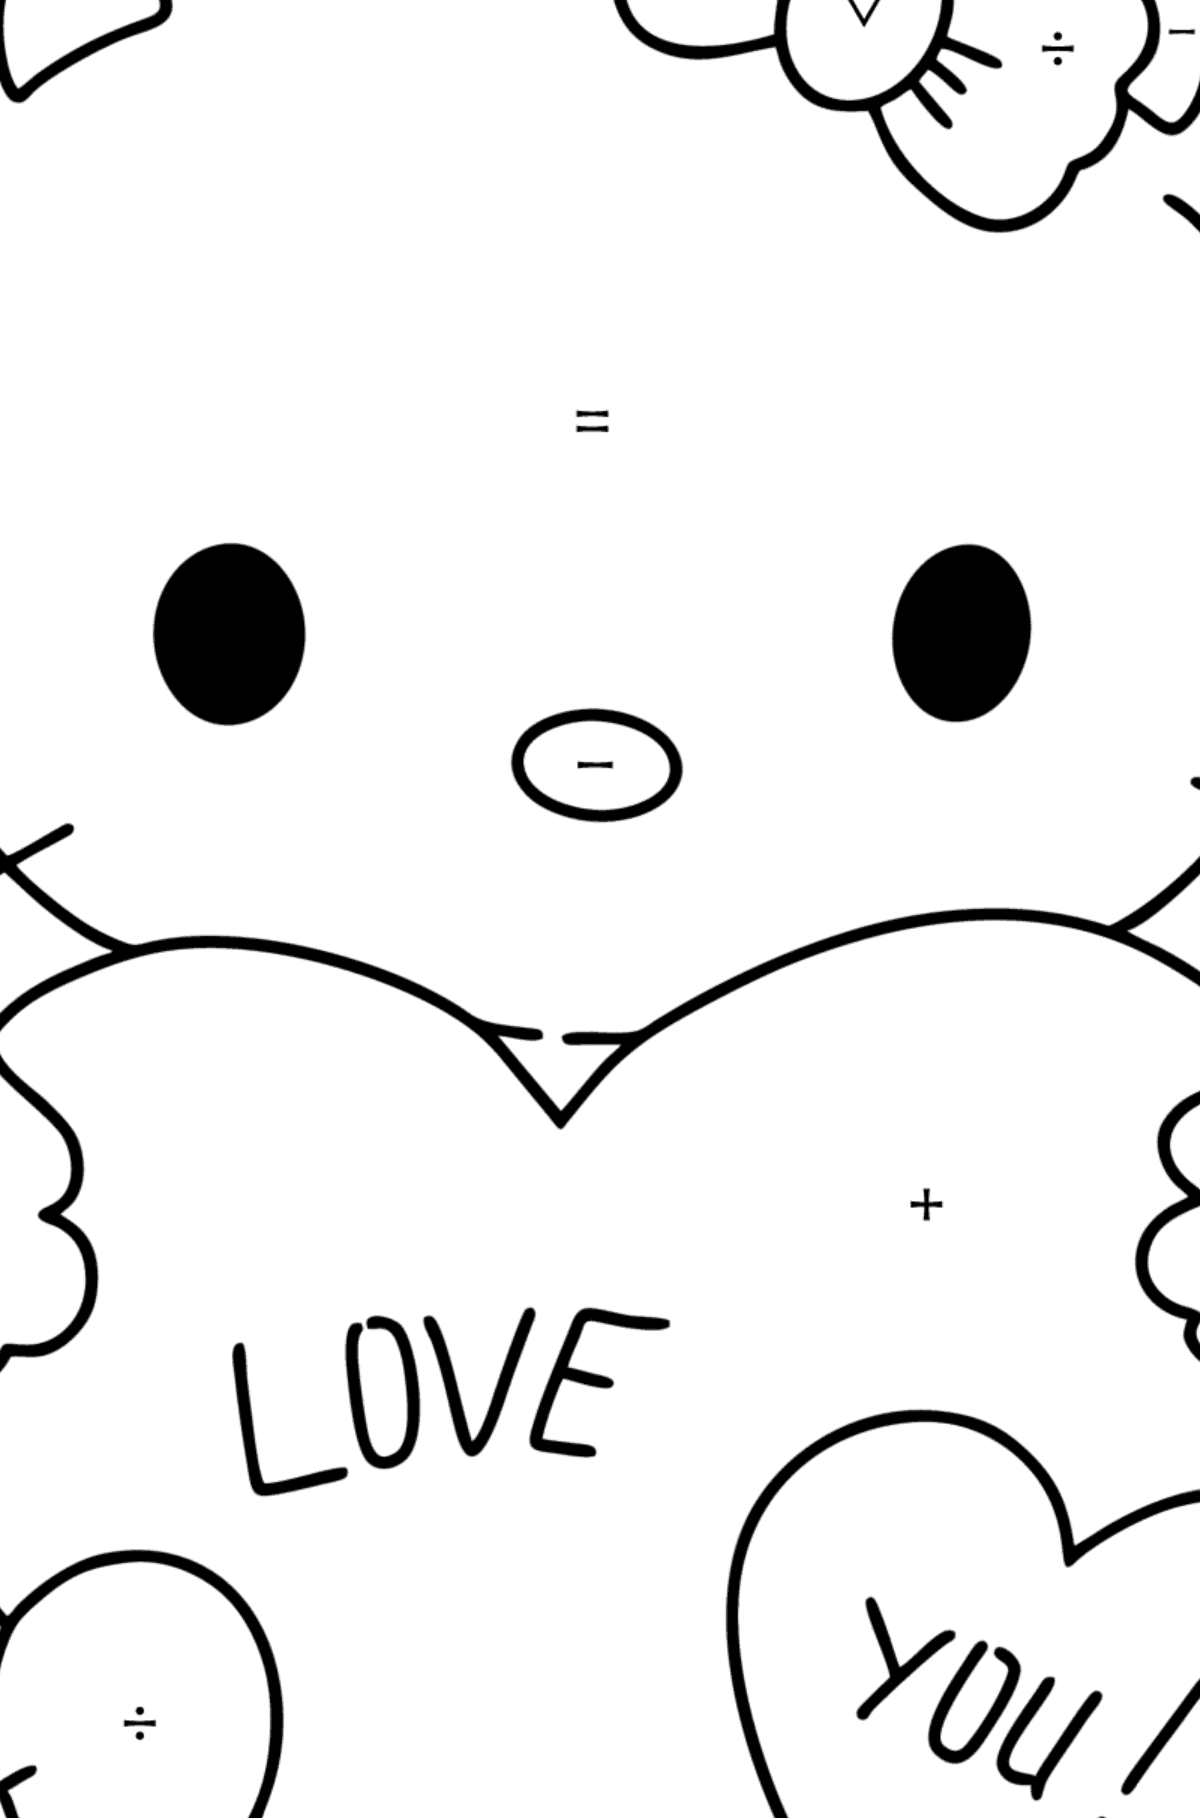 Boyama sayfası Hello Kitty ve kalpler - Sembollerle Boyama çocuklar için